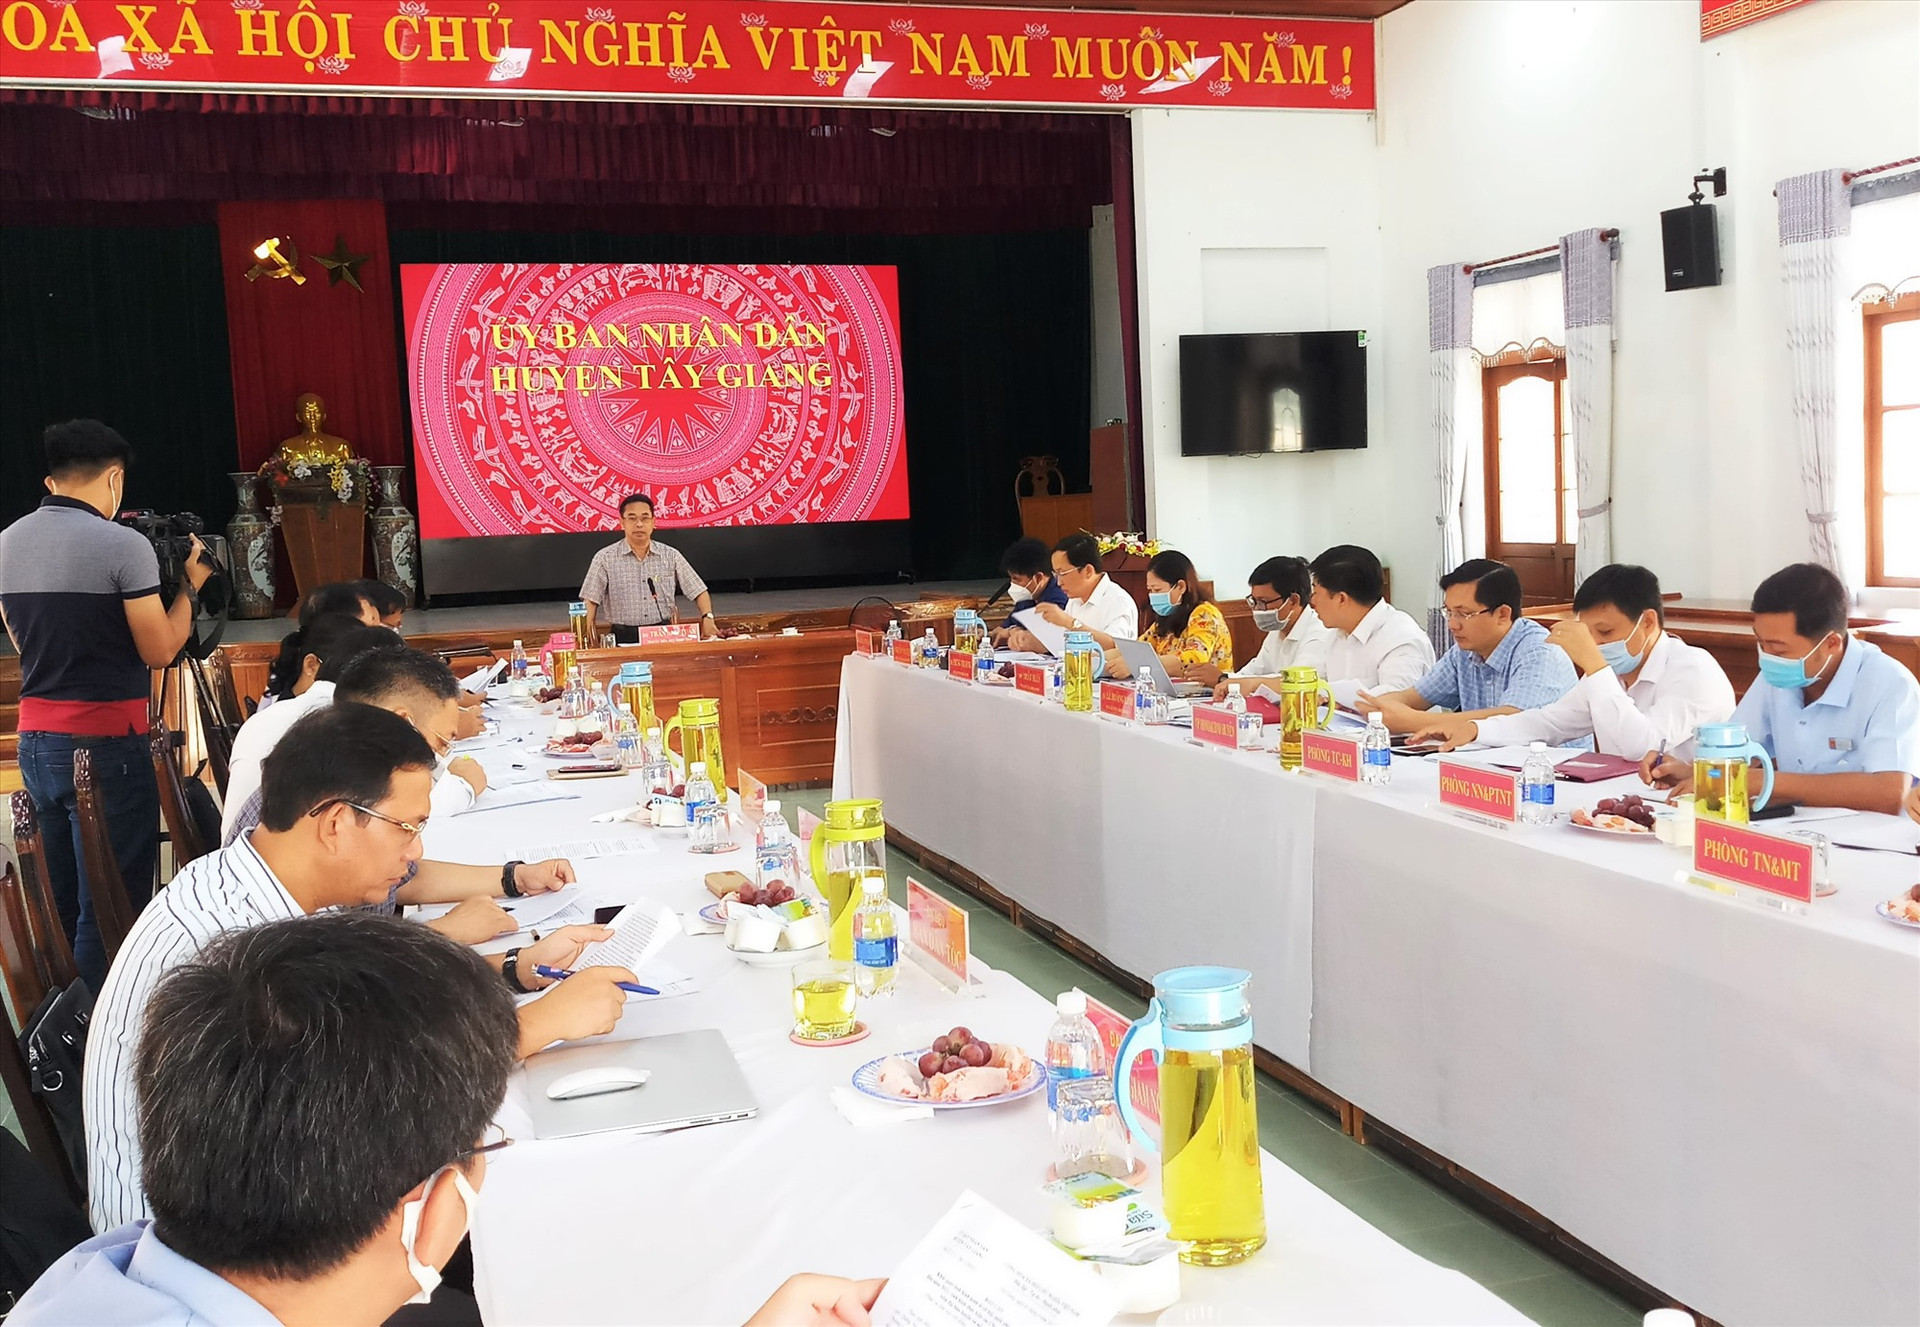 Phó Chủ tịch UBND tỉnh Trần Anh Tuấn phát biểu tại buổi làm việc với huyện Tây Giang. Ảnh: A.N